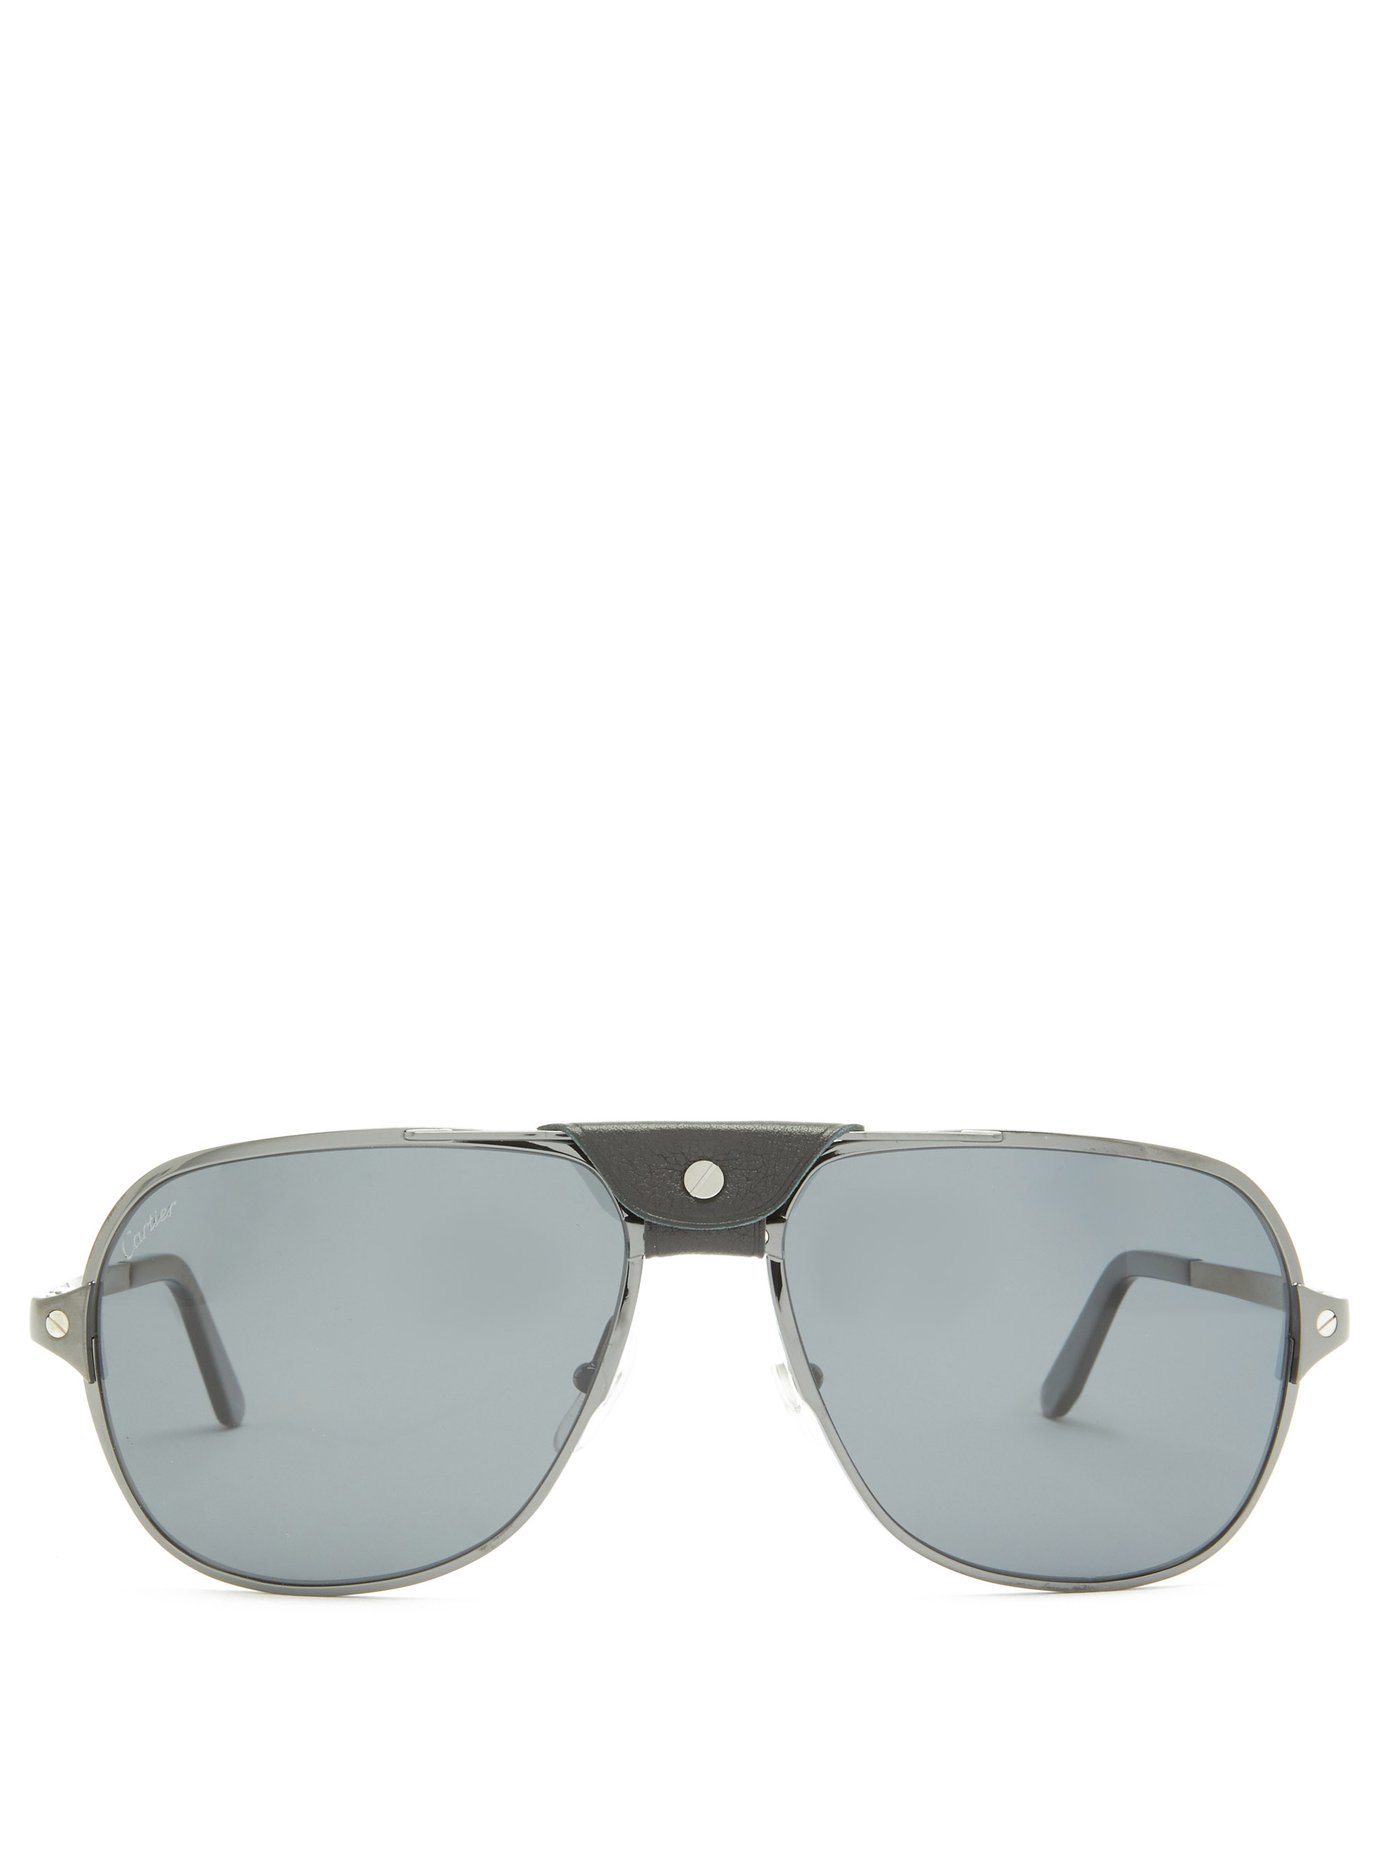 cartier aviator sunglasses